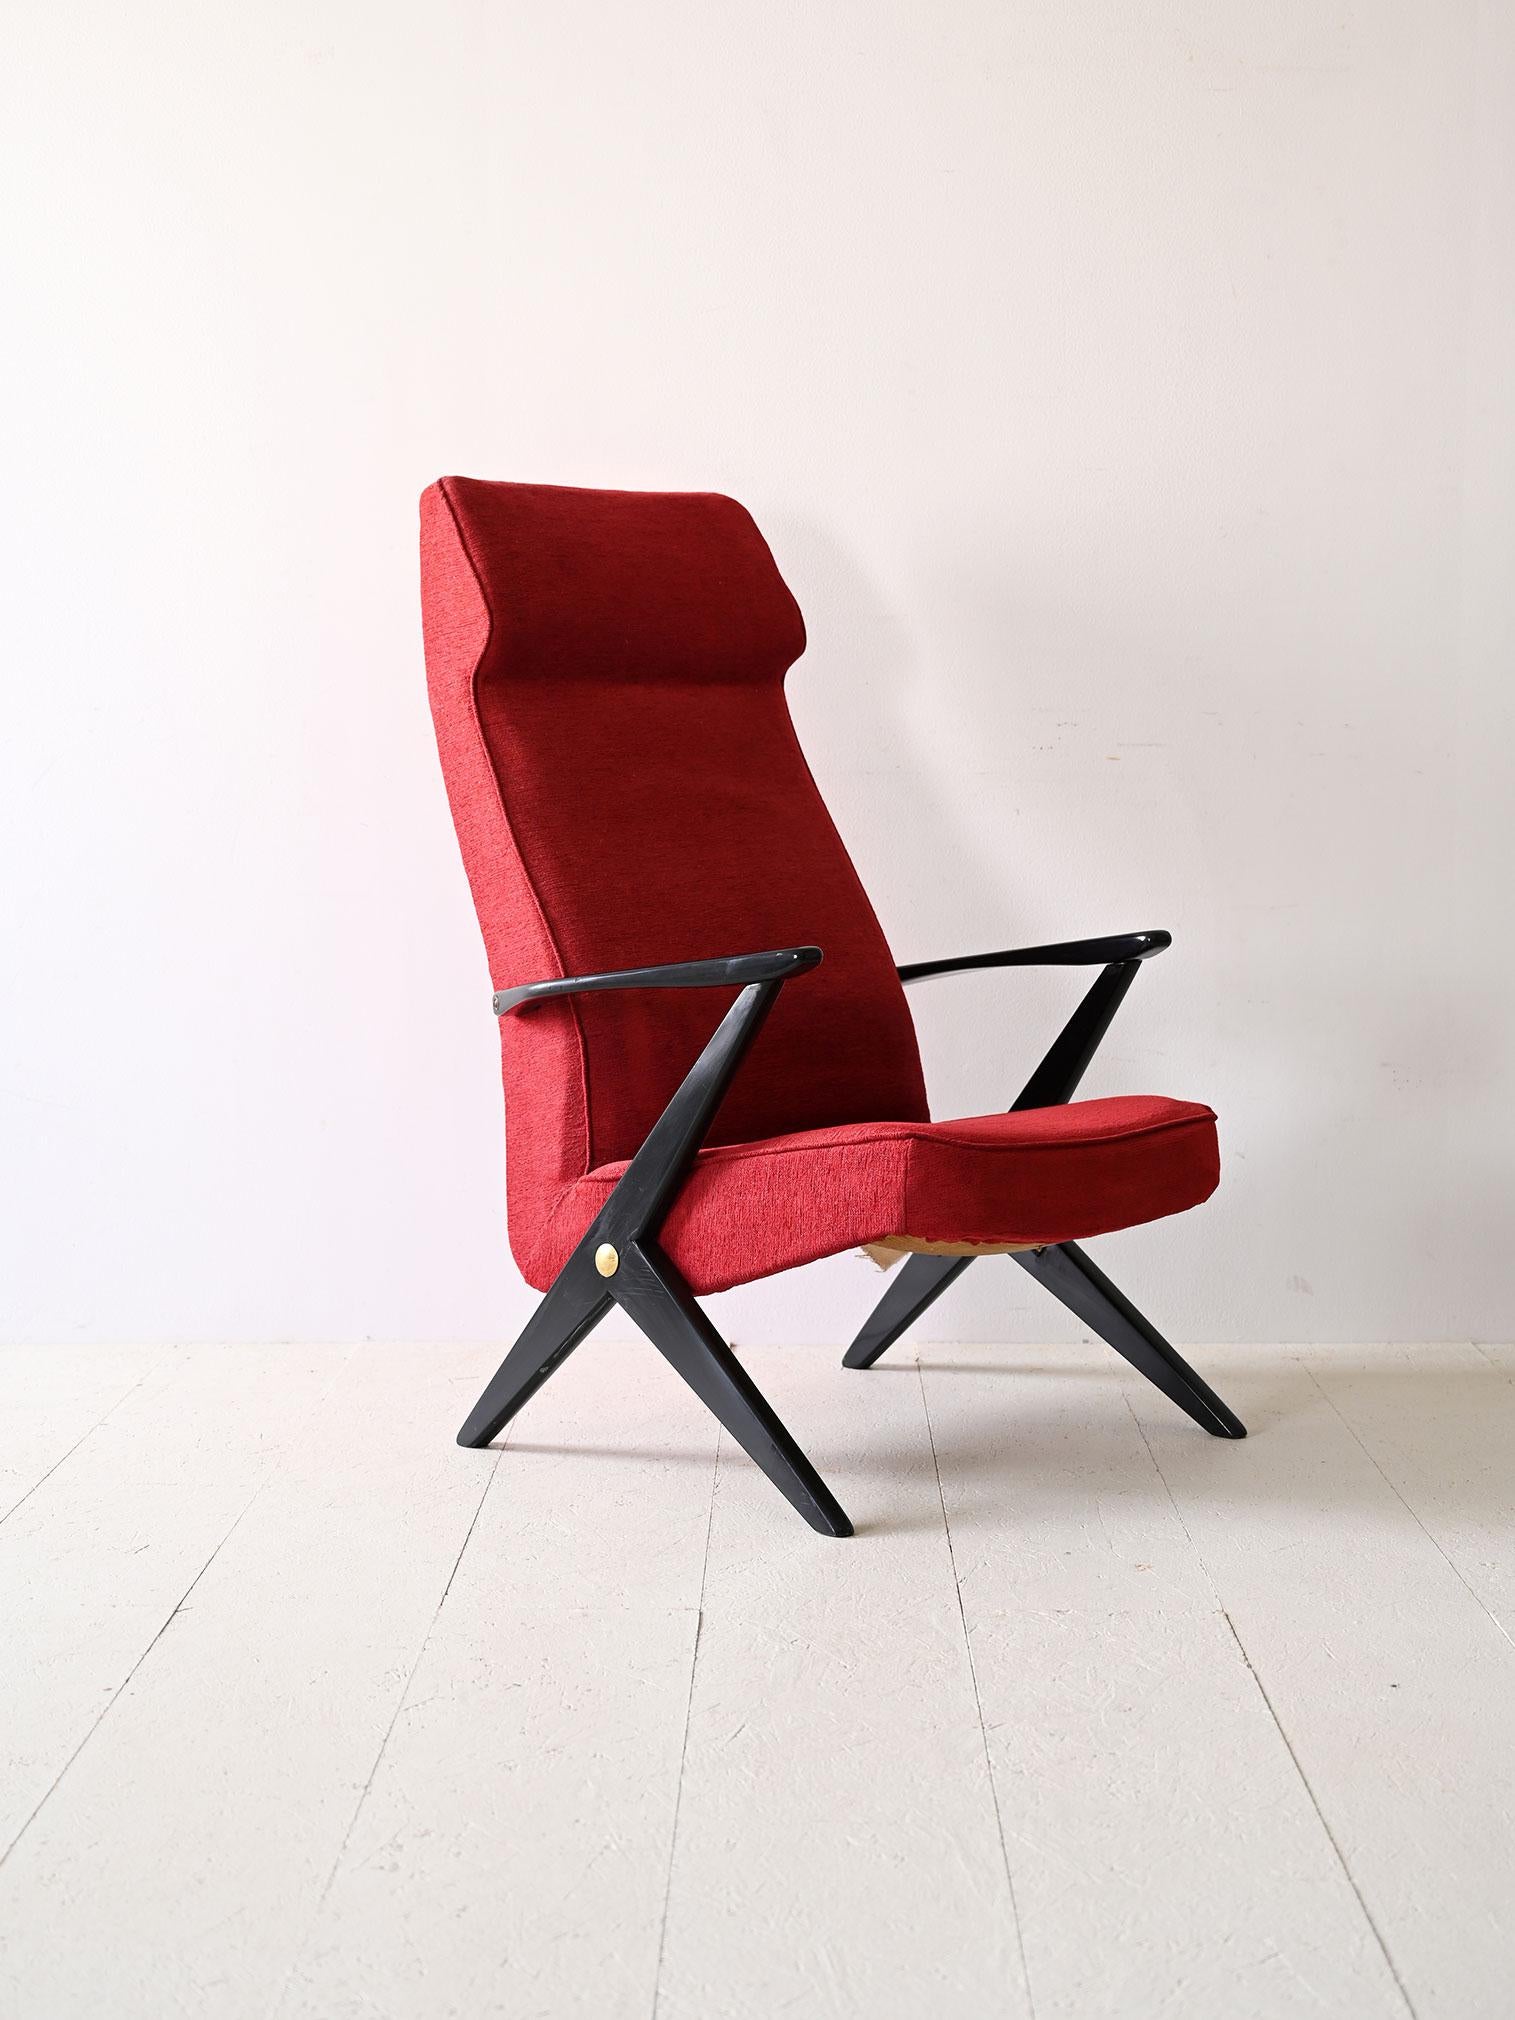 Fauteuil nordique rouge original des années 1950.

Ce fauteuil distinctif est enveloppé d'une nuance de rouge vibrante. La structure en bois noir accentue le contraste et confère au fauteuil un aspect sophistiqué.

Le créateur de cette chaise est